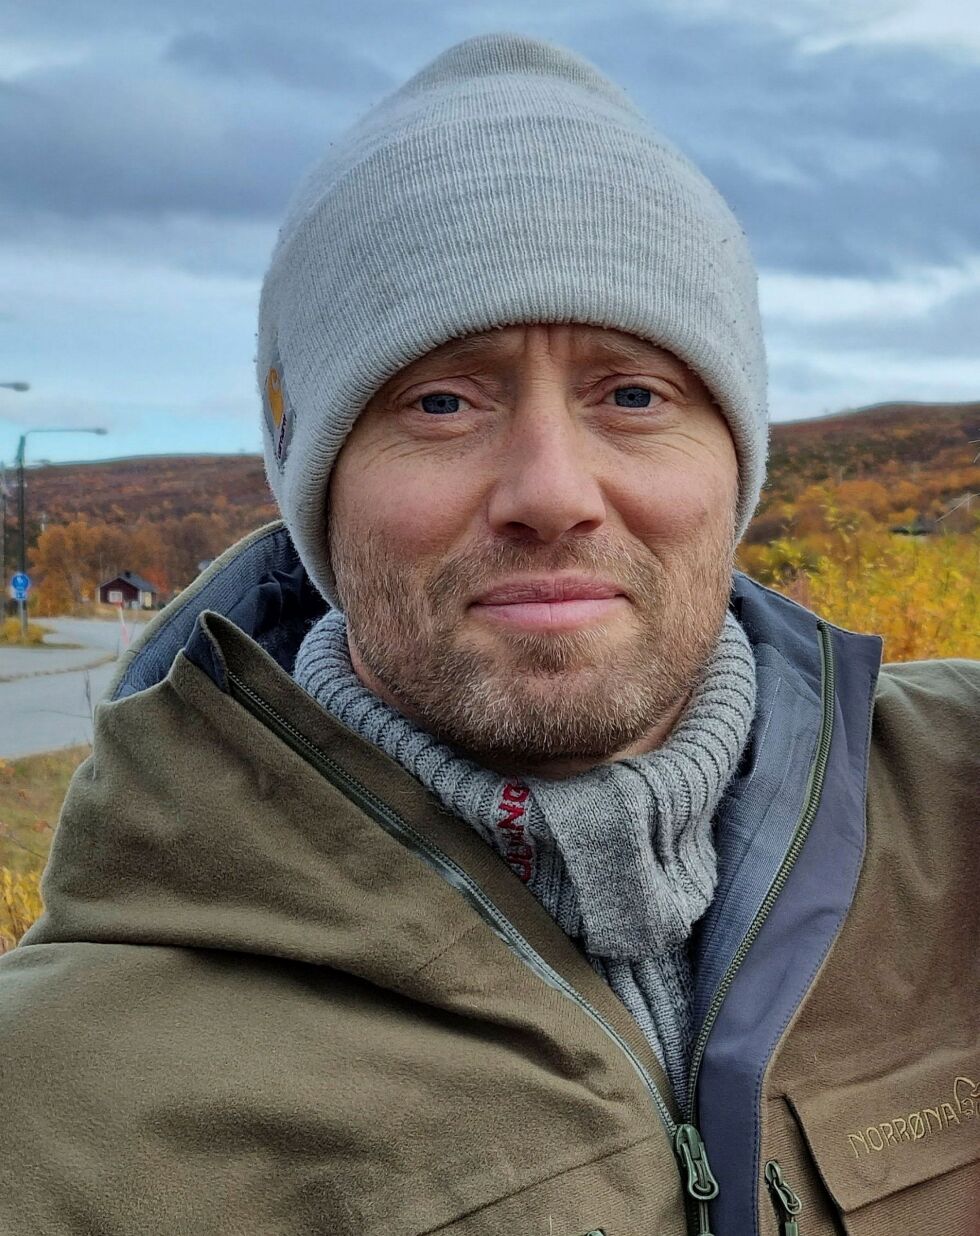 Skuespiller Aksel Hennie vil oppholde seg i Nuorgam-området i flere uker i forbindelse med innspilling av en actionfilm.
 Foto: Torbjørn Ittelin